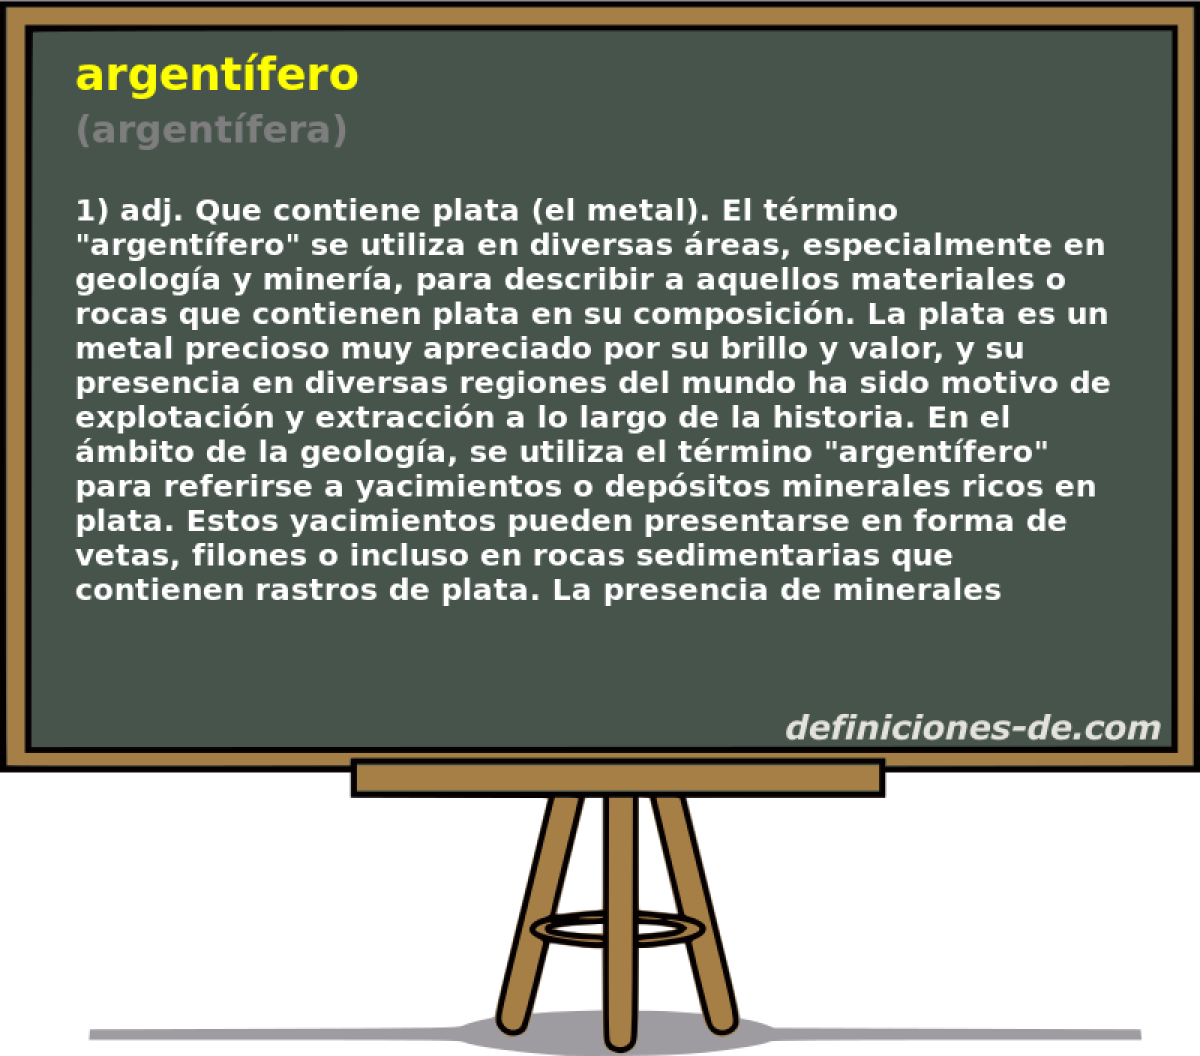 argentfero (argentfera)